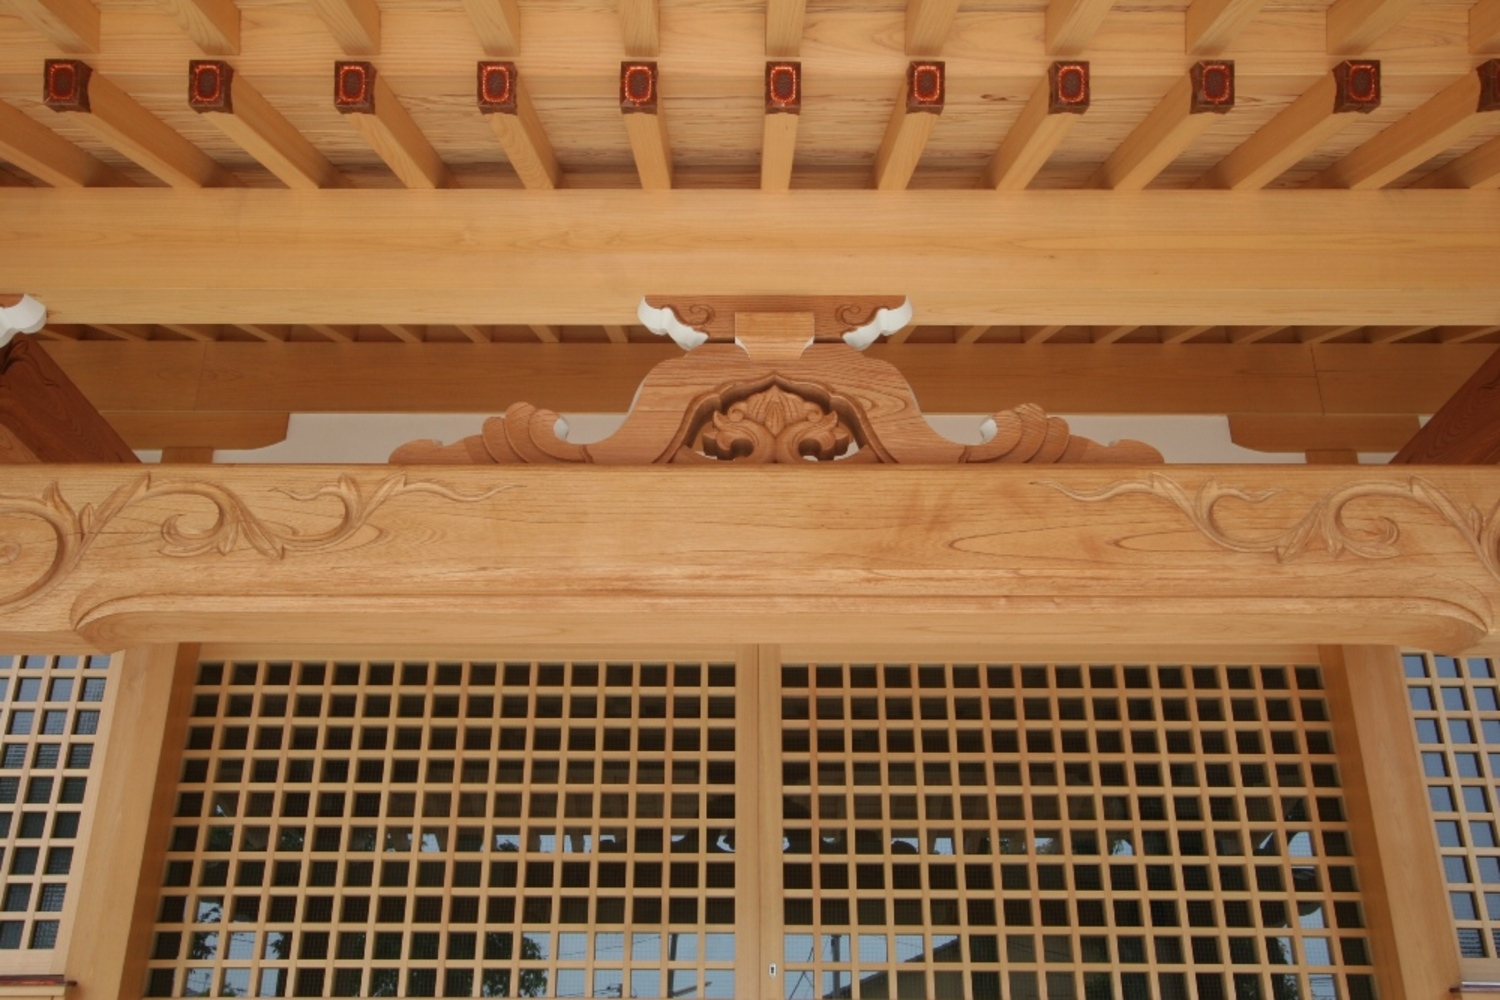 『石坂熊野神社』　　　　　　　　　　　　　　　　　　　　　　　　　　　　　　　　　　　　　　　　　　　　　　　　　　　《設計》1級建築士事務所 さの設計室　　　　　　　　　　　　　　　　　　　　　　　　　　　　　　　　　　　　　　　　《施工》㈱建築工房わたなべ　　　　　　　　　　　　　　　　　　　　　　　　　　　　　　　　　　　　　　　　　　　　　　　
■内観写真他は画像をクリック♪